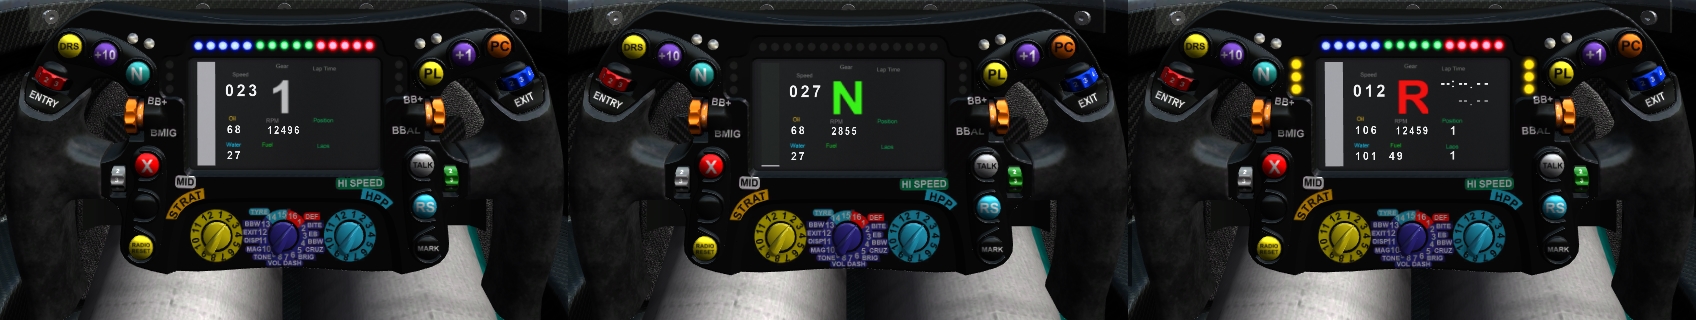 F Ultimate Led LCD Steering Wheel.jpg